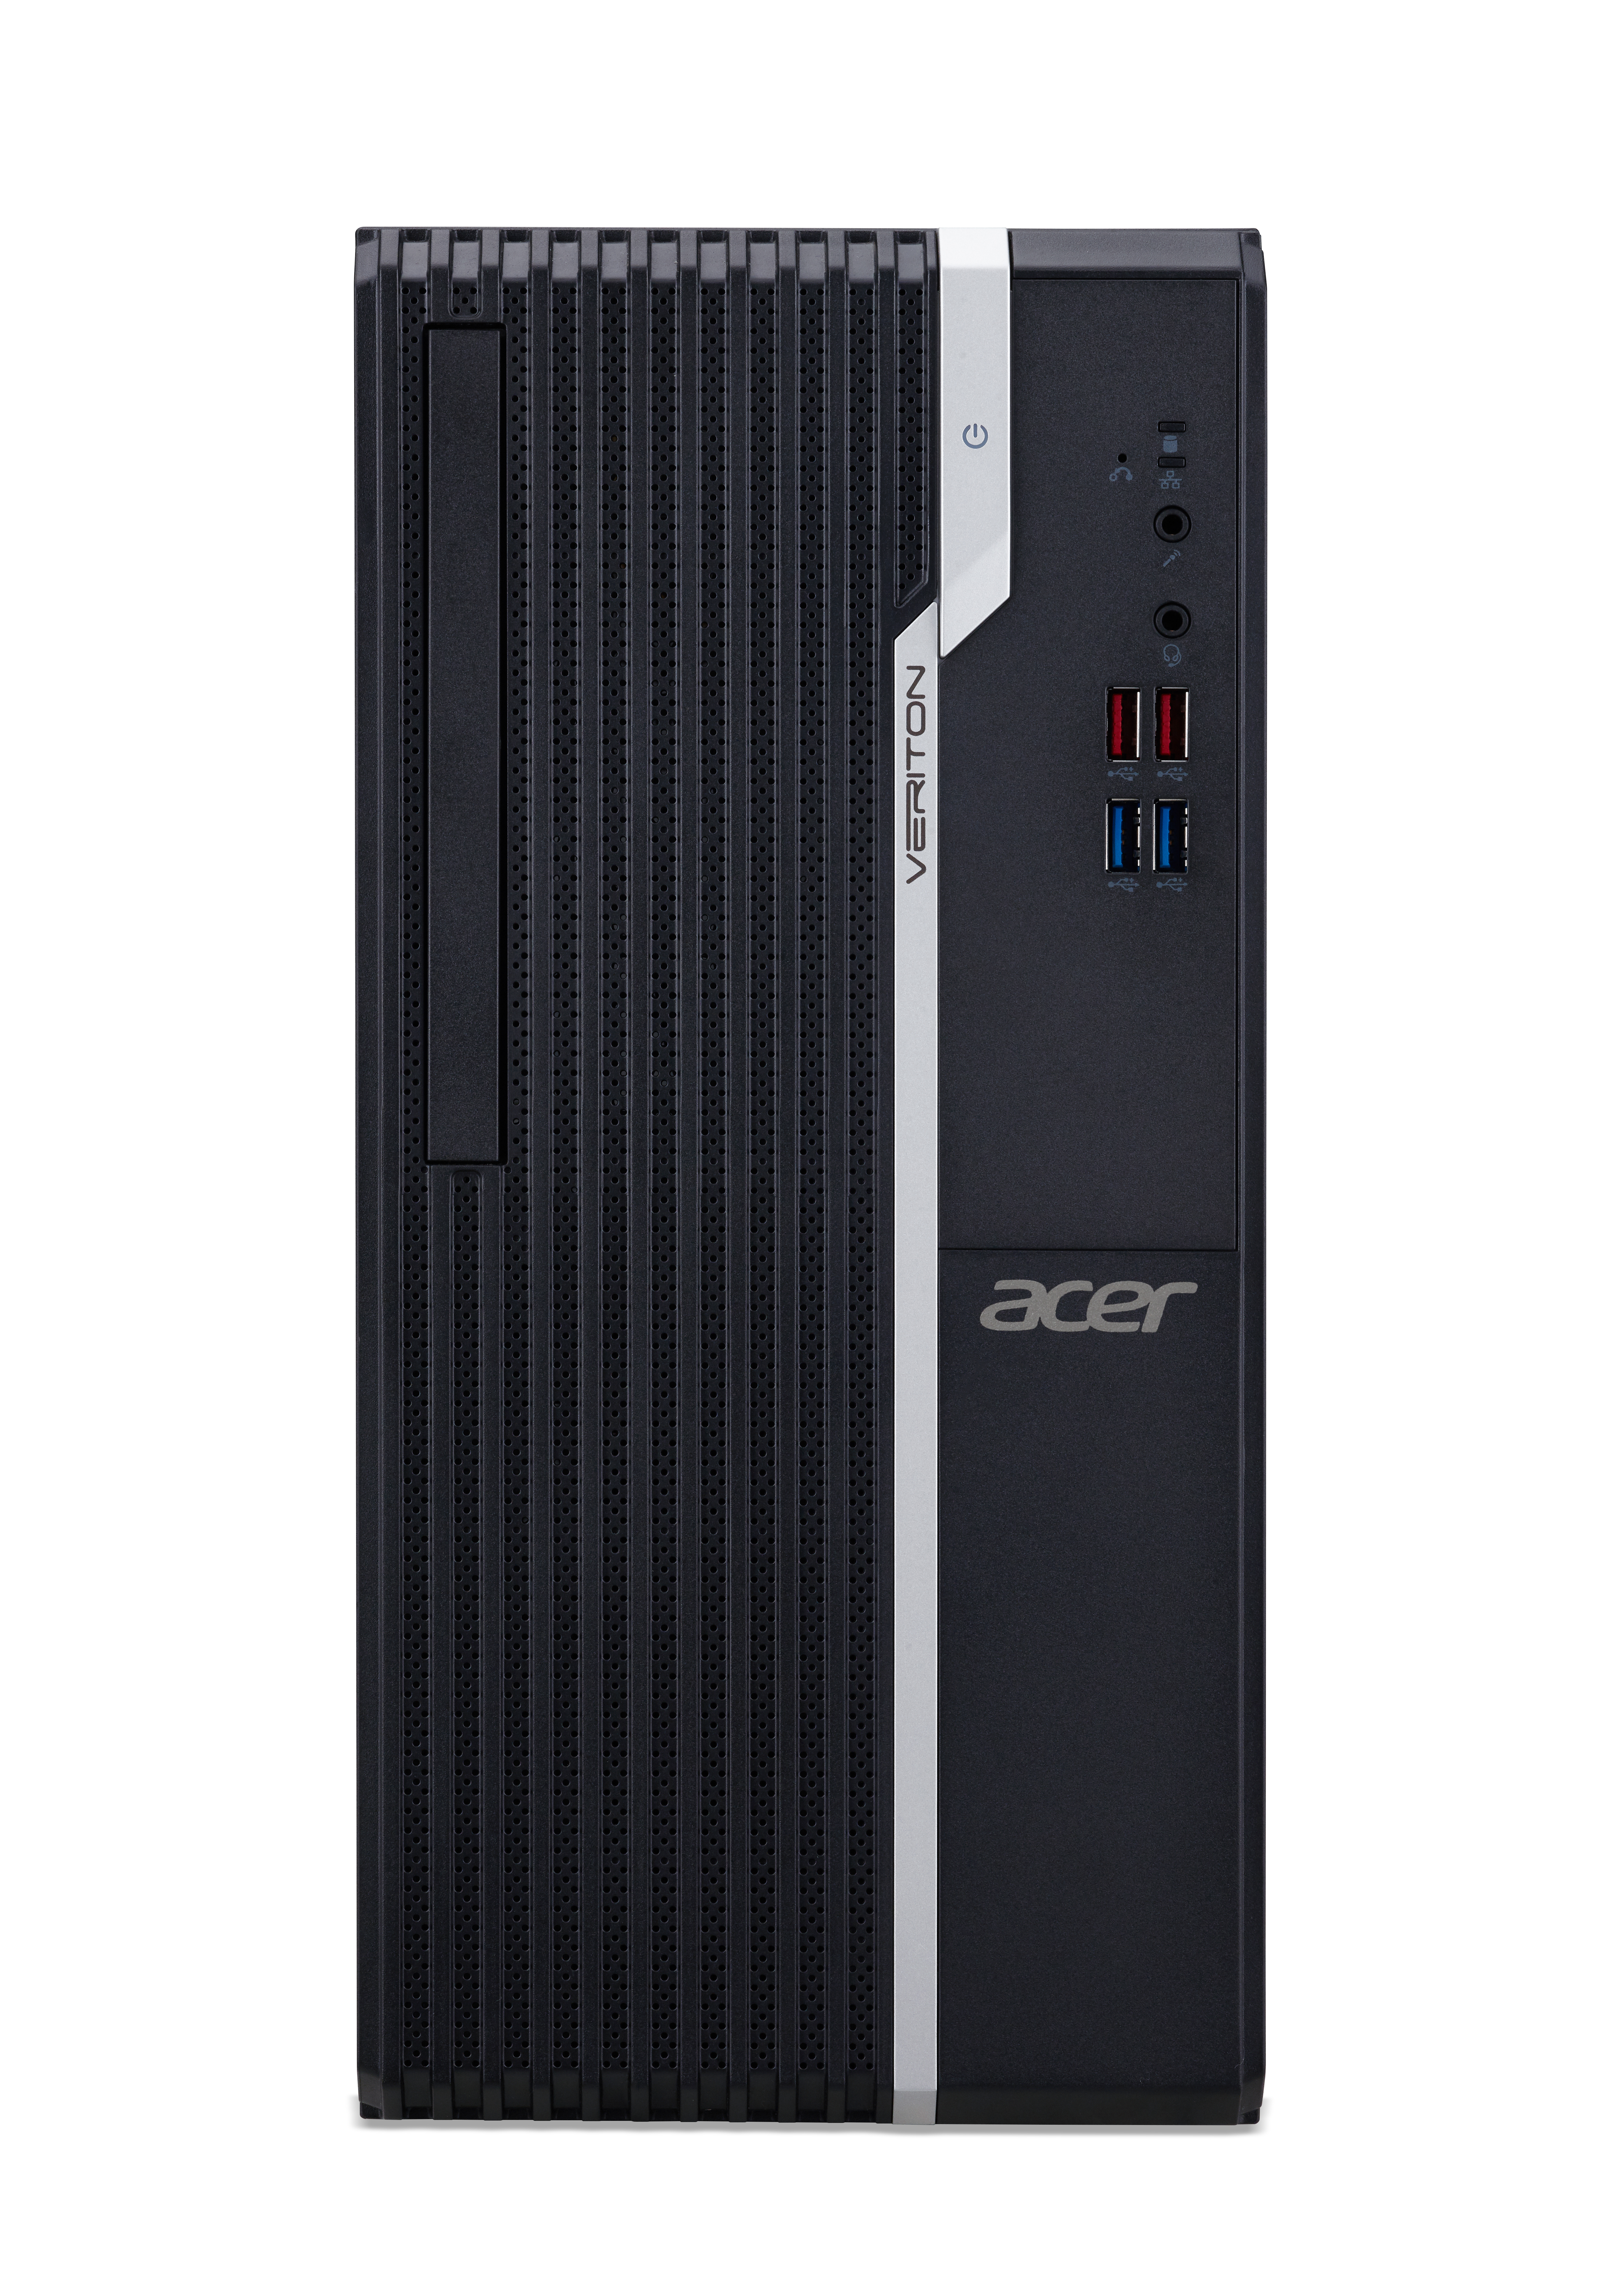 Acer Veriton S2680G DDR4-SDRAM i3-10105 Desktop Intel Core? i3 di decima generazione 4 GB 256 GB SSD PC Nero